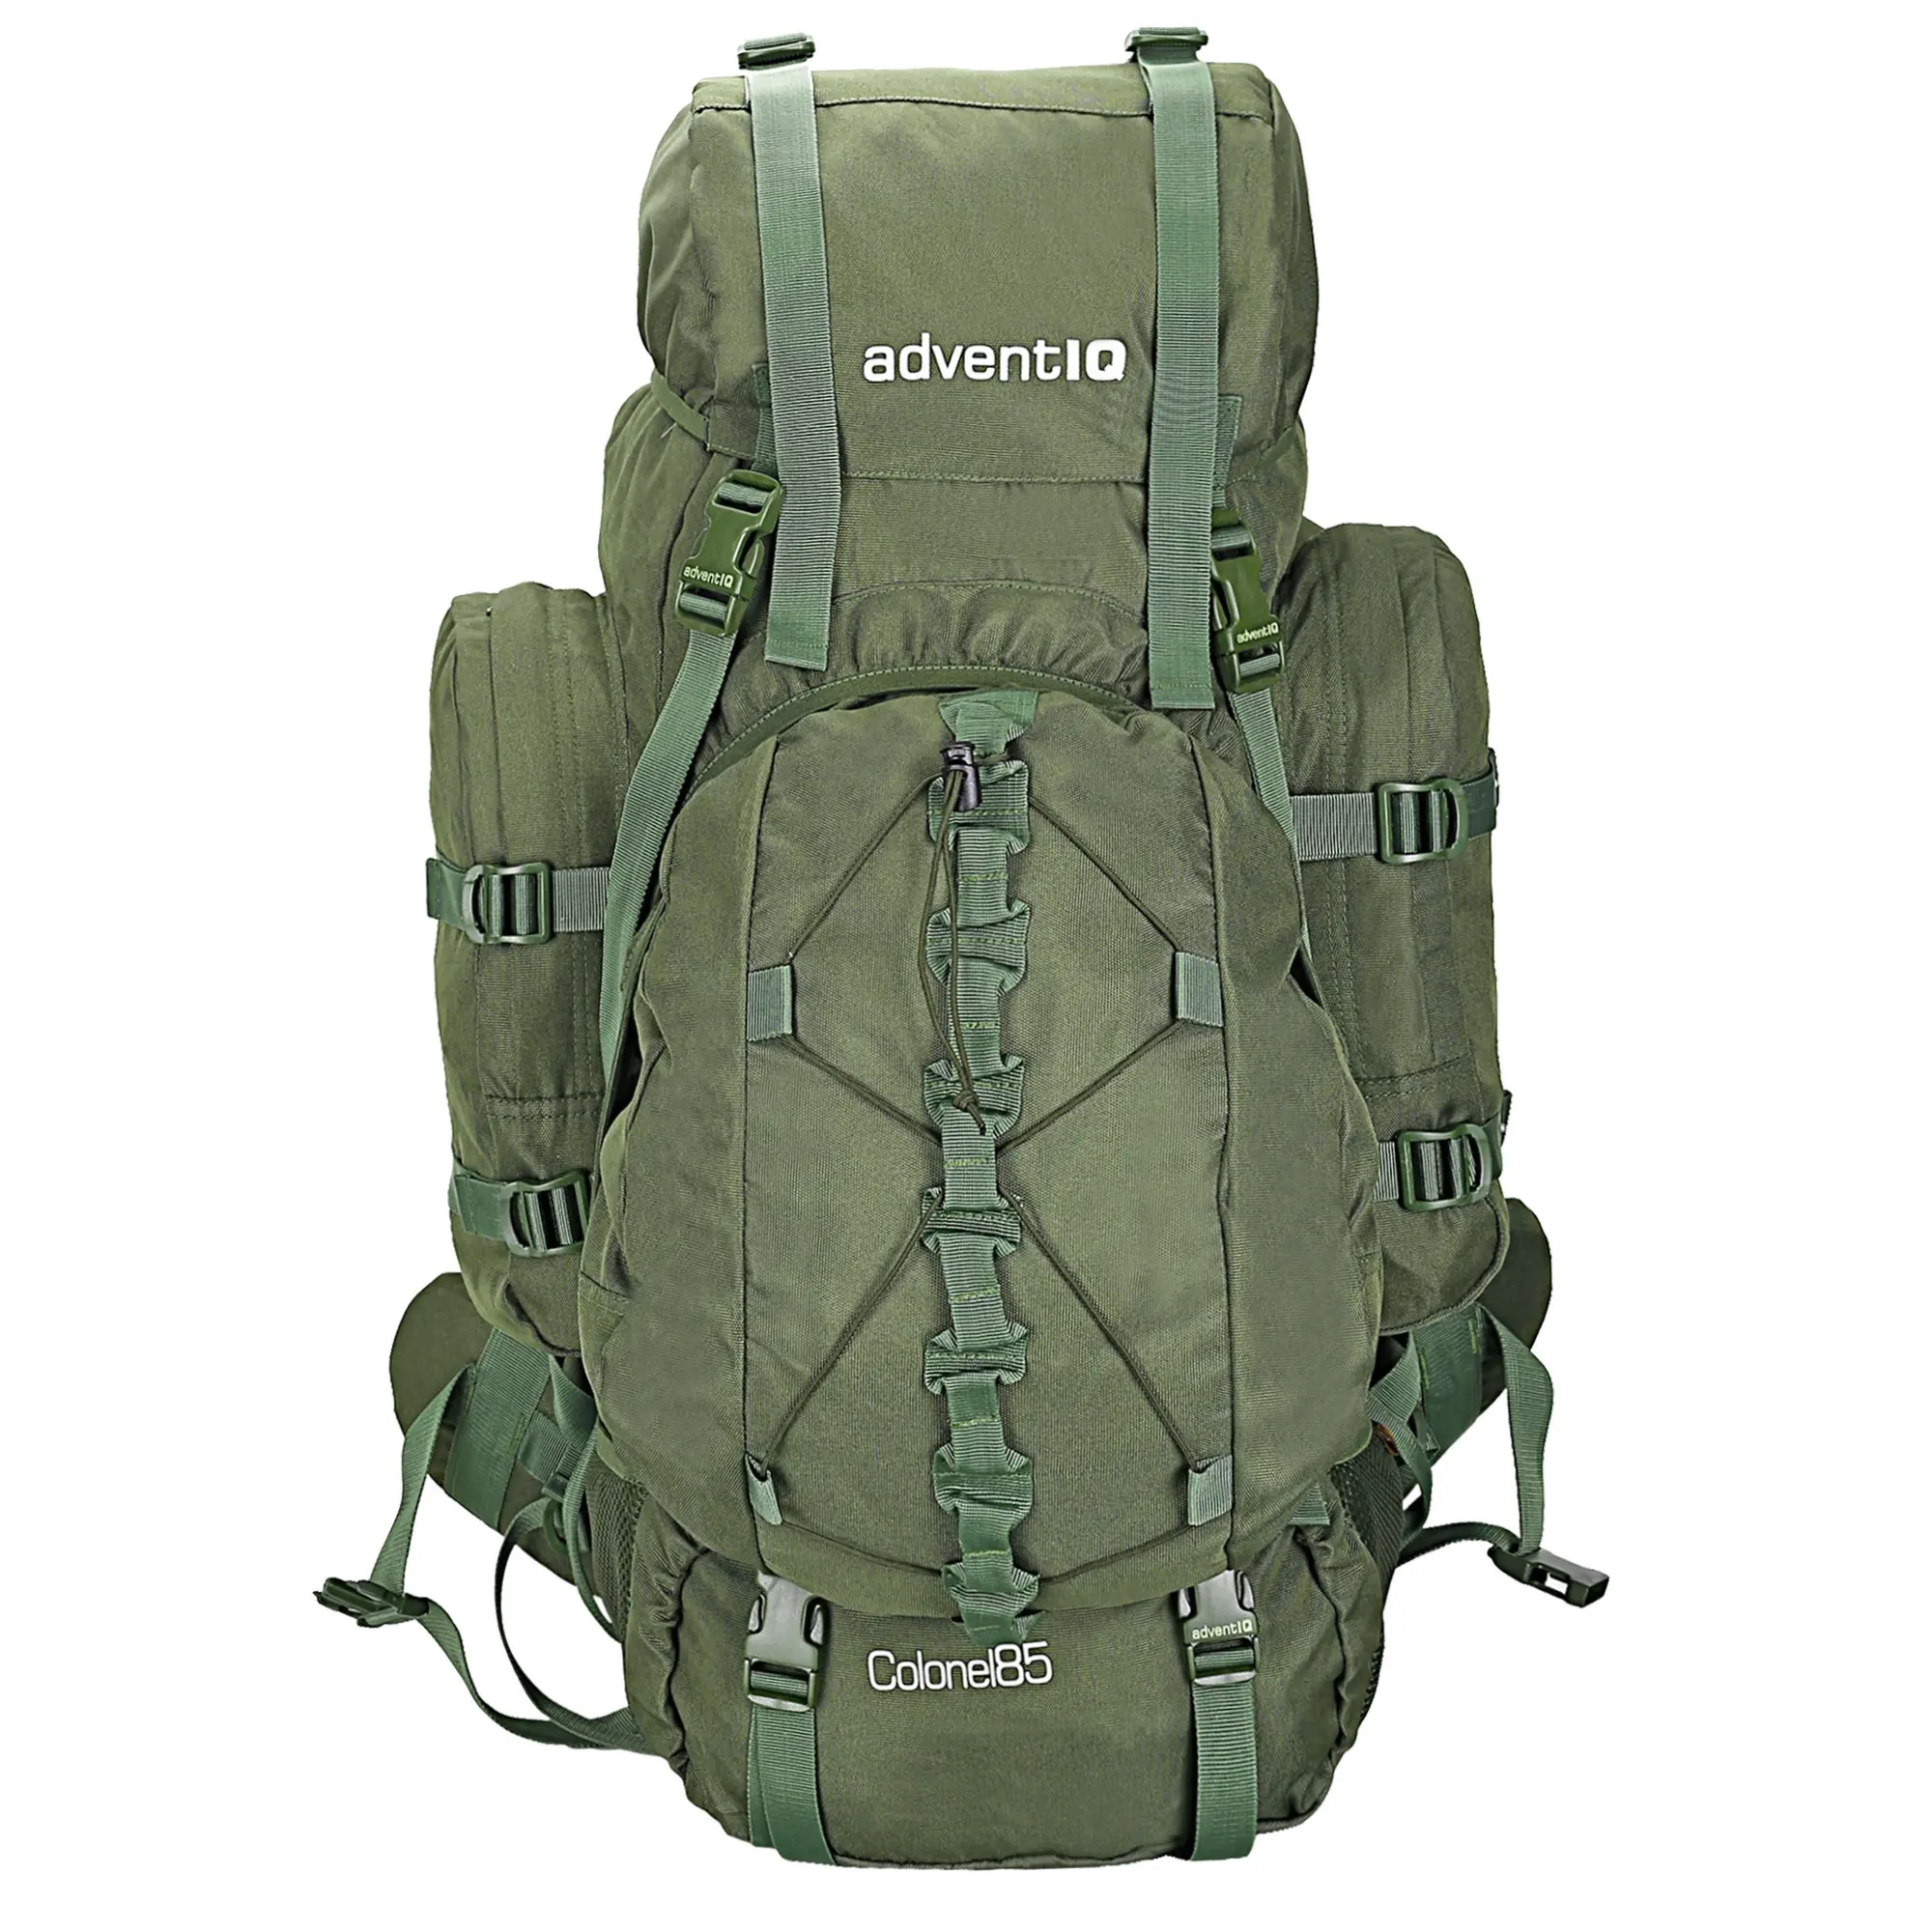 Multi Functional Outdoor Rucksack Bag hiking mountaineering camping Sports travel bag climbing backpacking trekking bag